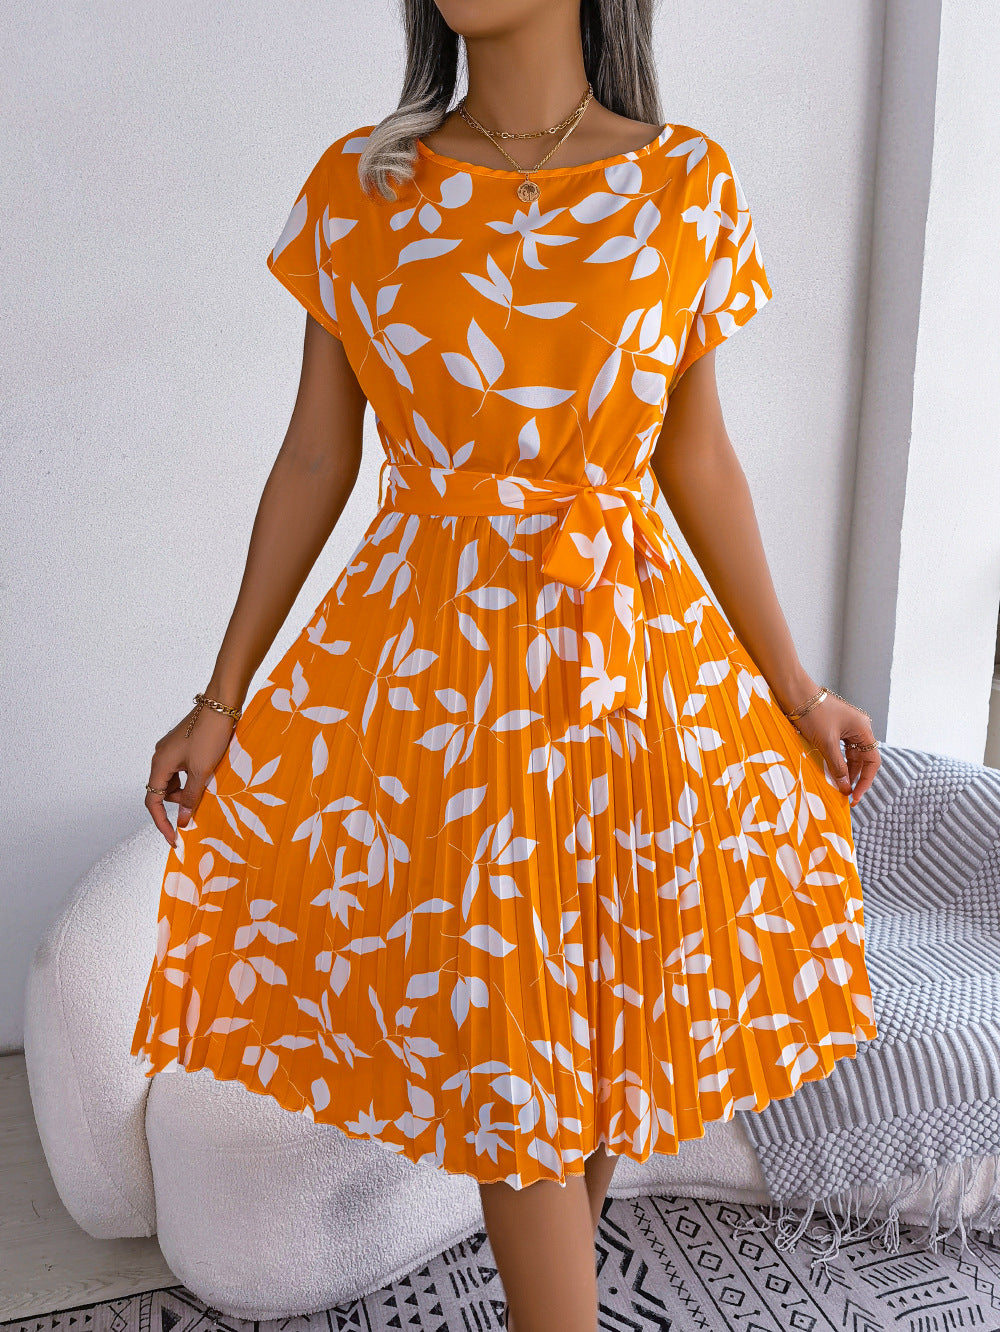 Lovemi -  Leaf Print Dress Women Short Sleeve Lace-up Skirt Summer Beach Dress